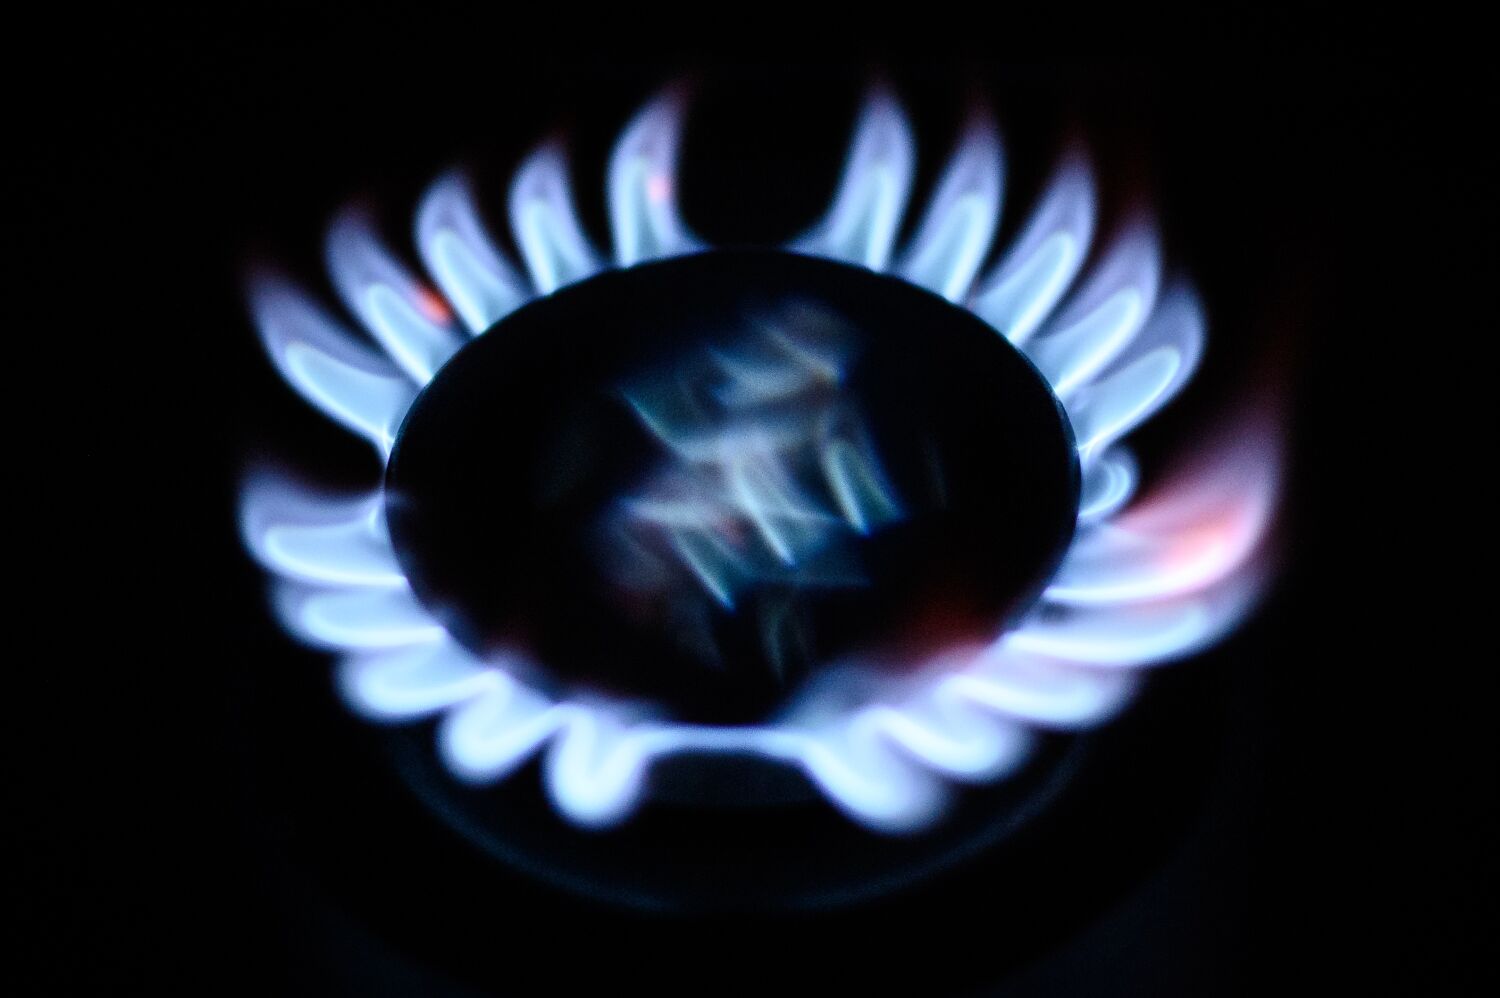 Los precios del gas natural se han disparado: Prepárese para una factura enorme de SoCalGas este mes